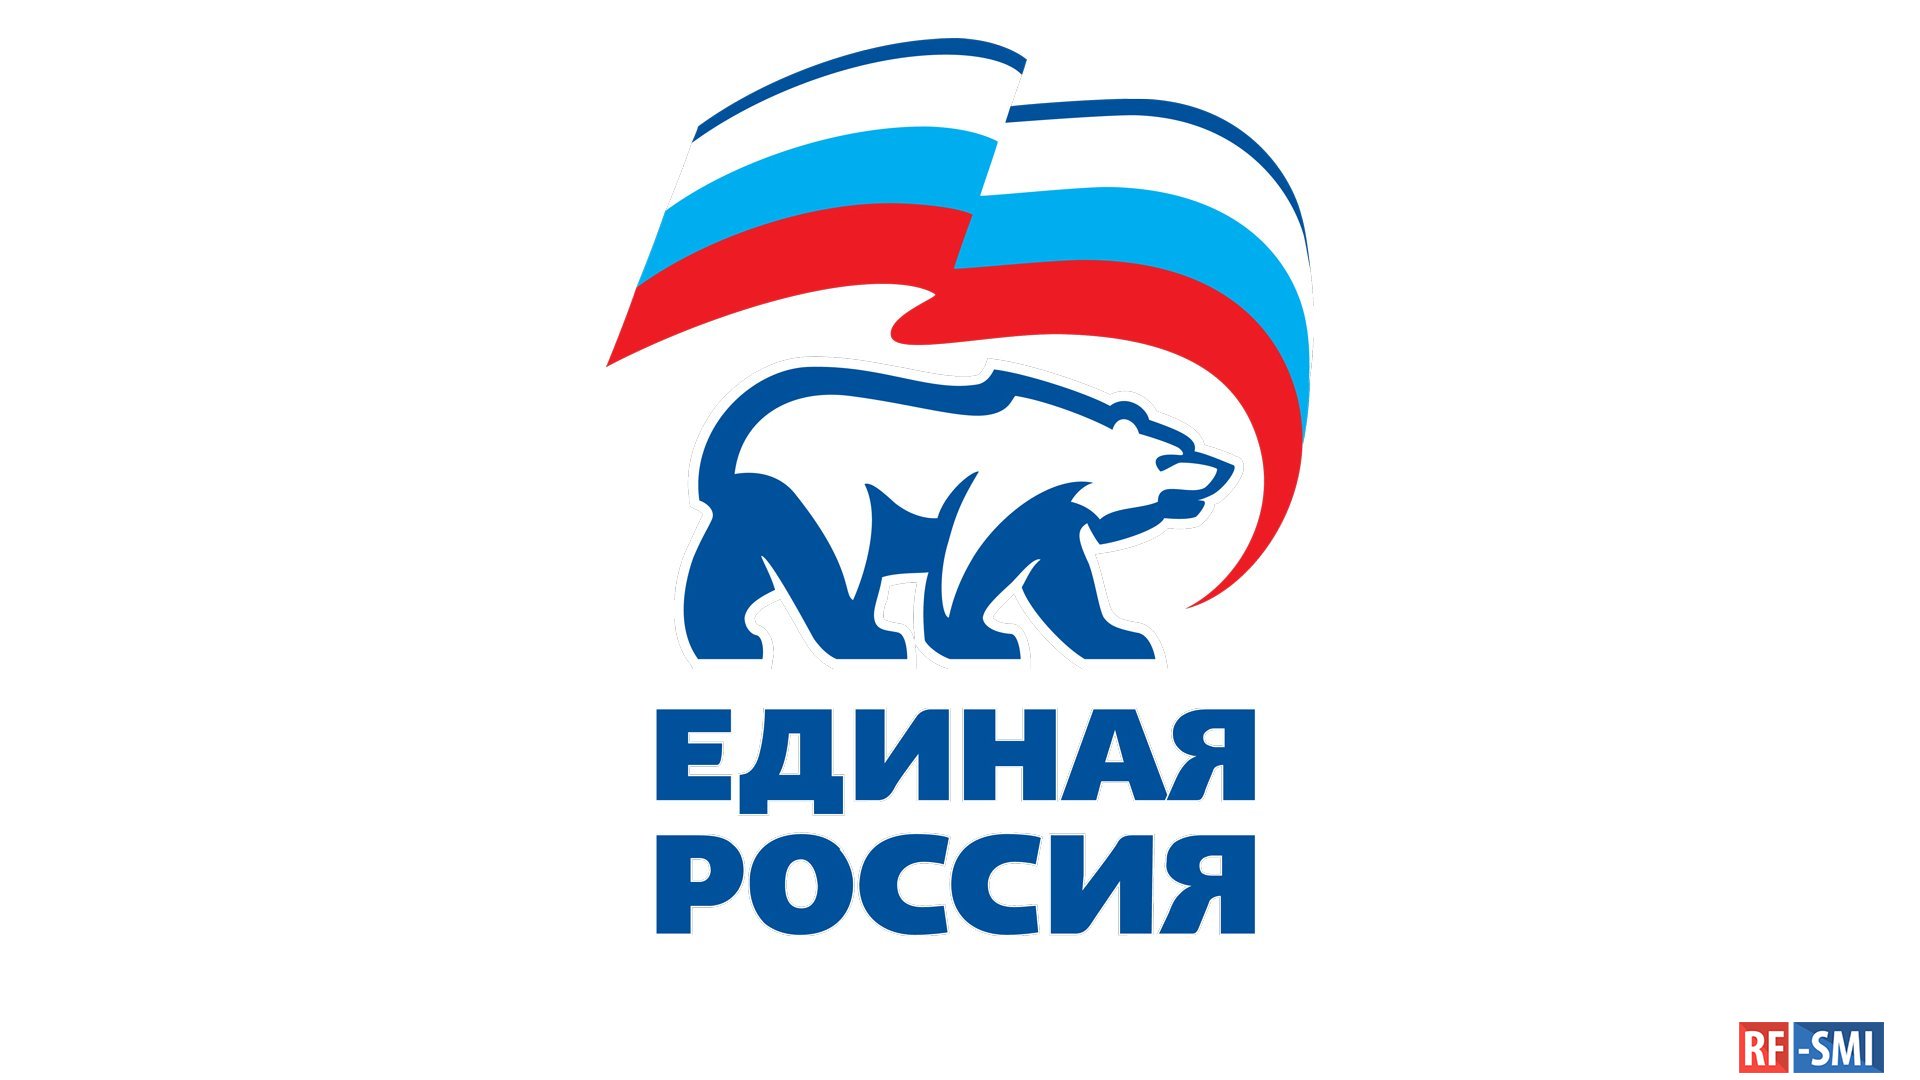 Единая Россия культура малой Родины лого